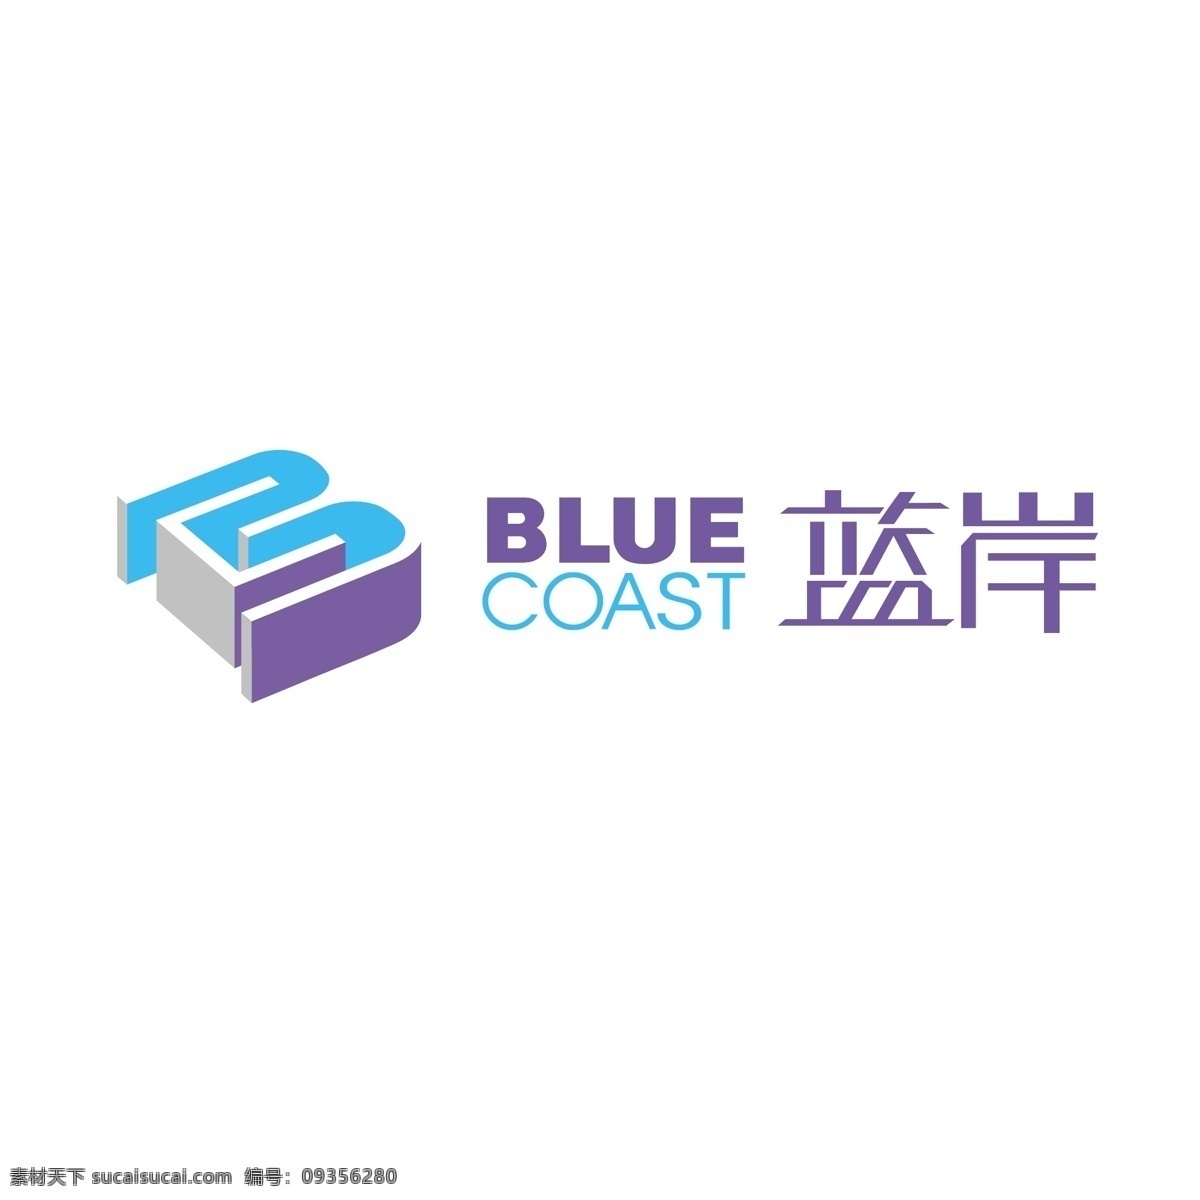 蓝 岸 logo 简约logo 蓝色logo 免费 图形设计 文字logo 字体设计 蓝岸logo 矢量图